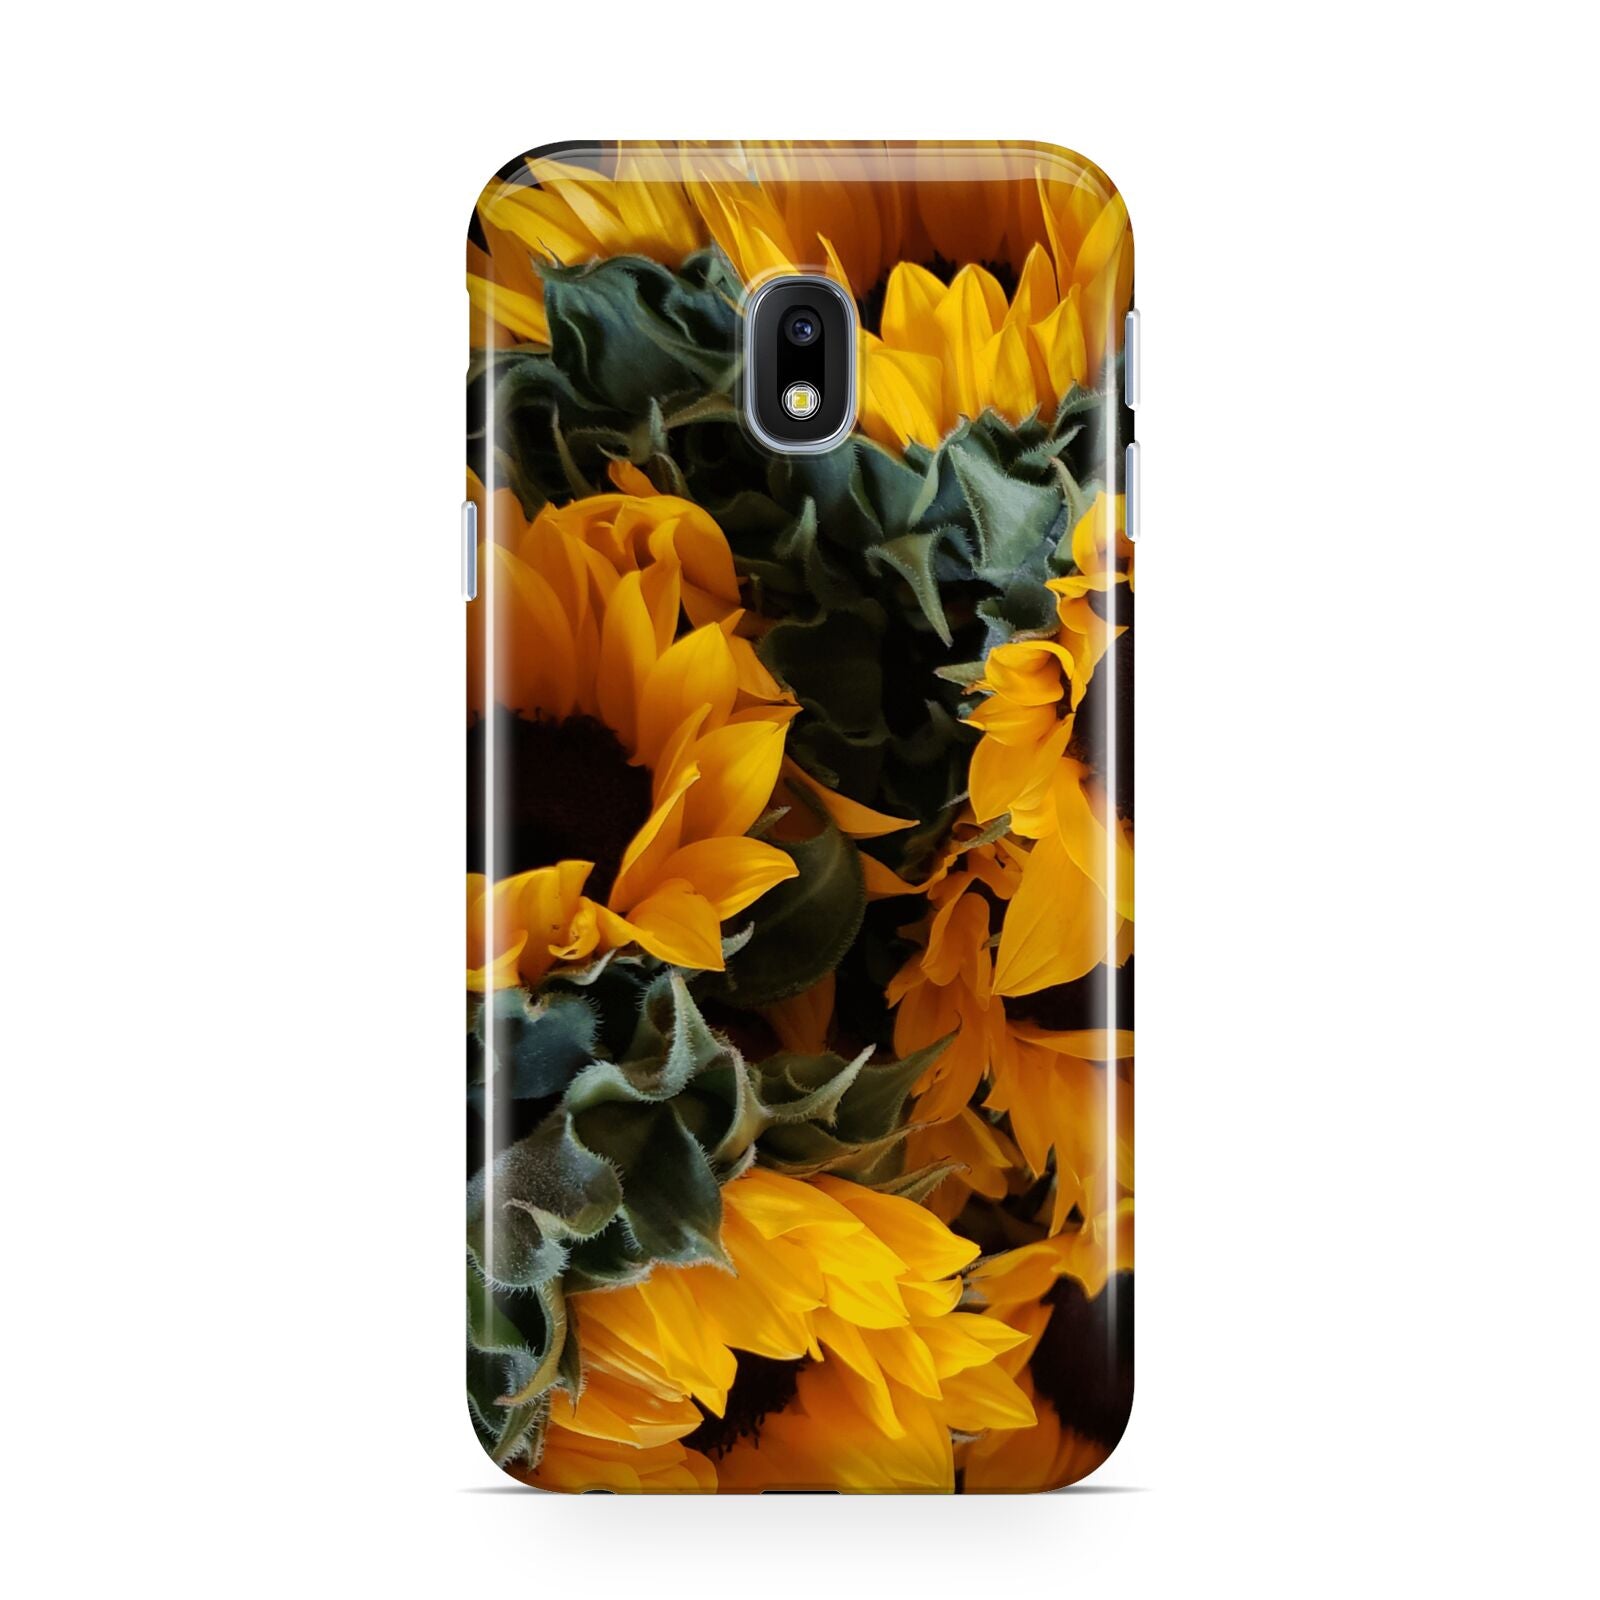 Sunflower Samsung Galaxy J3 2017 Case